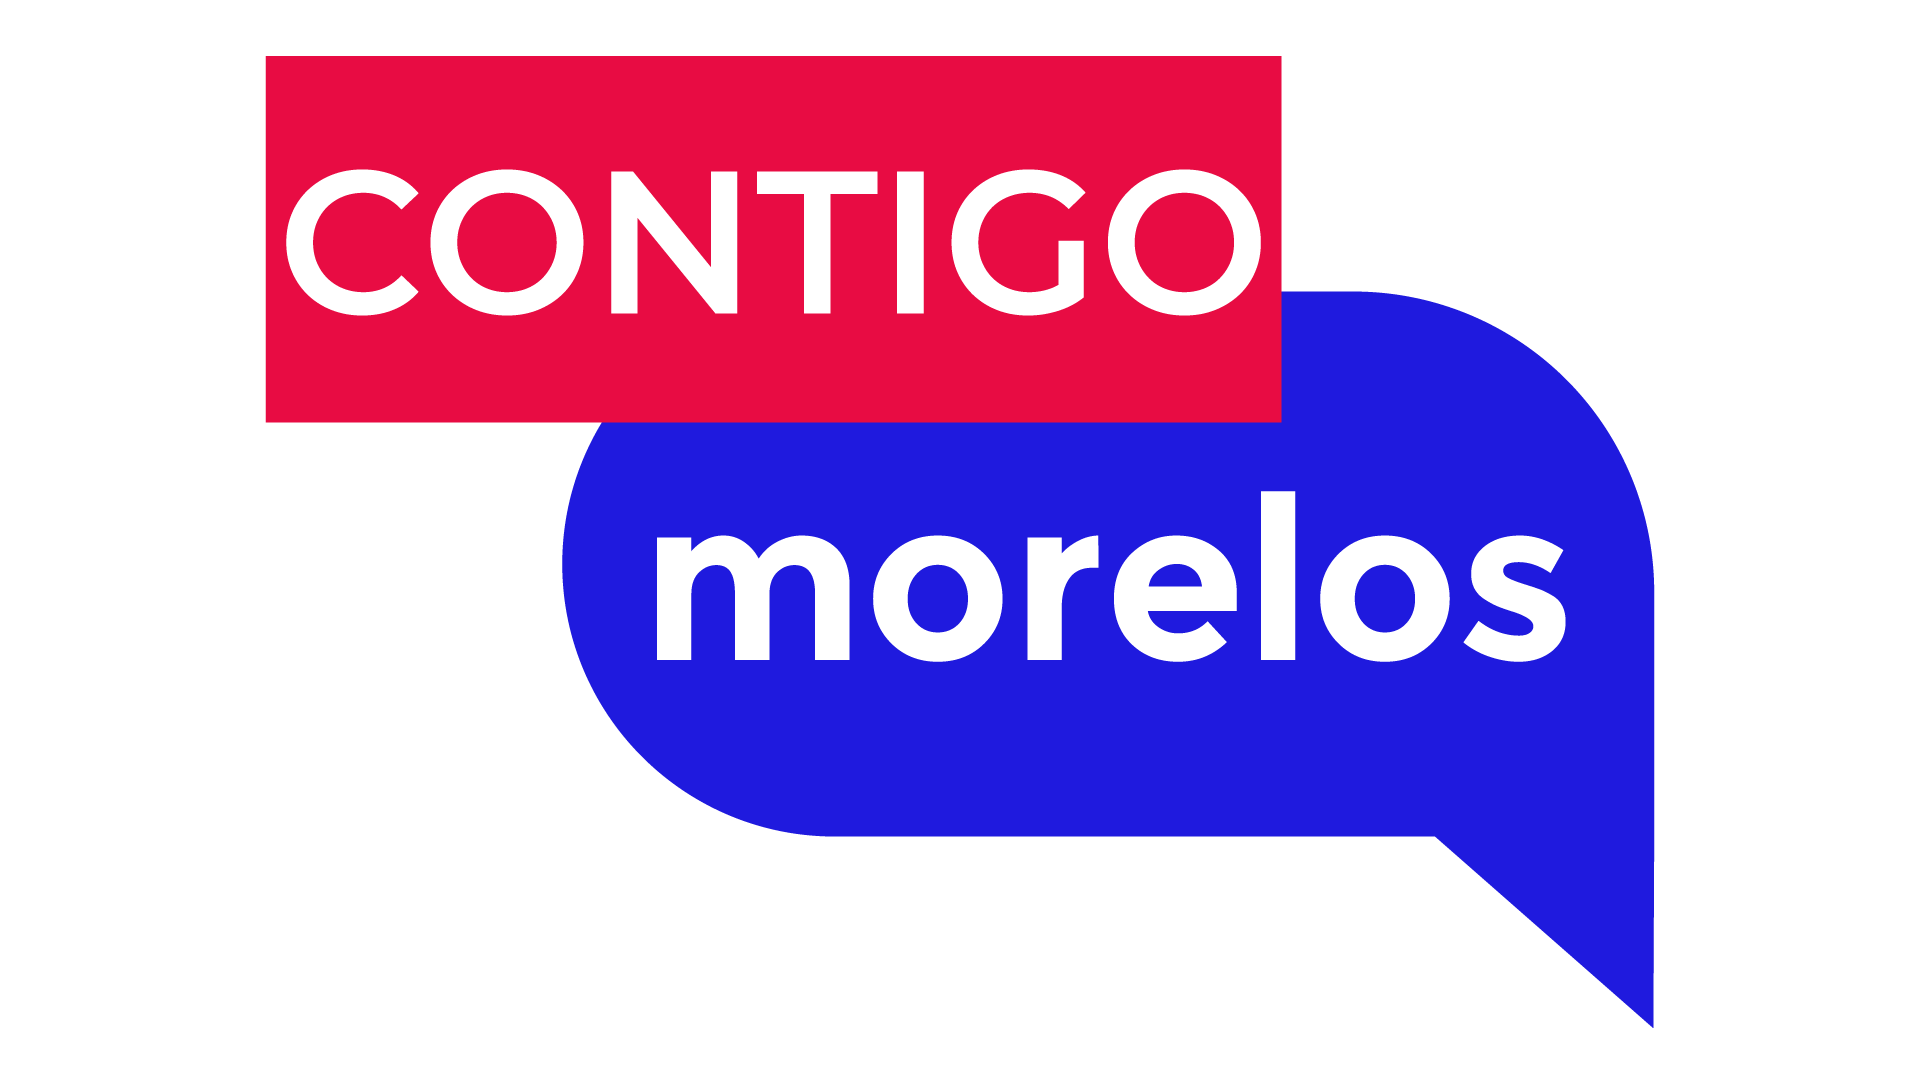 Contigo Morelos